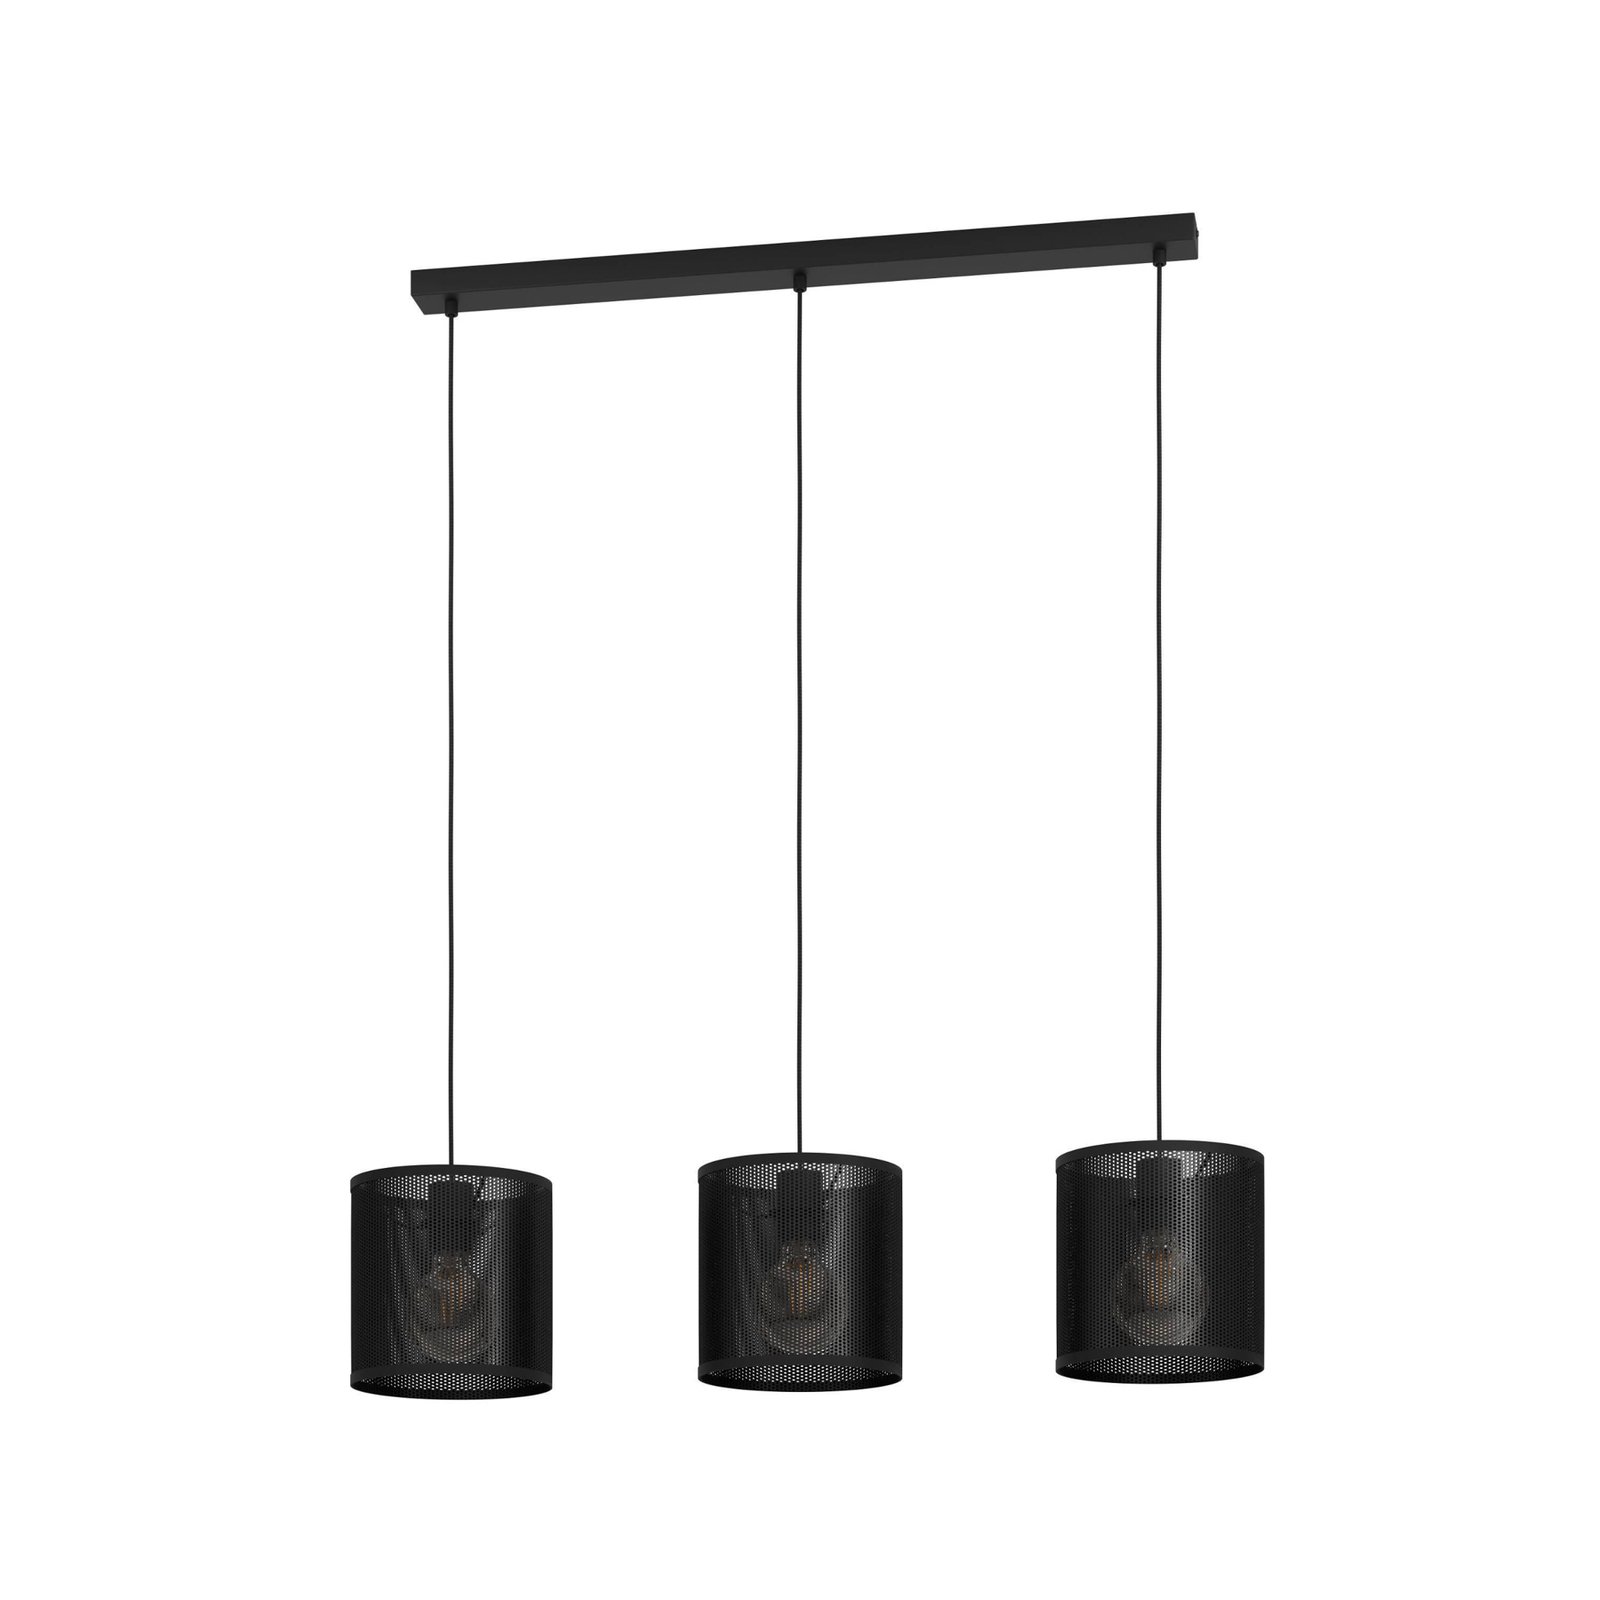 Lampa wisząca Manby, długość 90 cm, czarna, 3-punktowa, stalowa